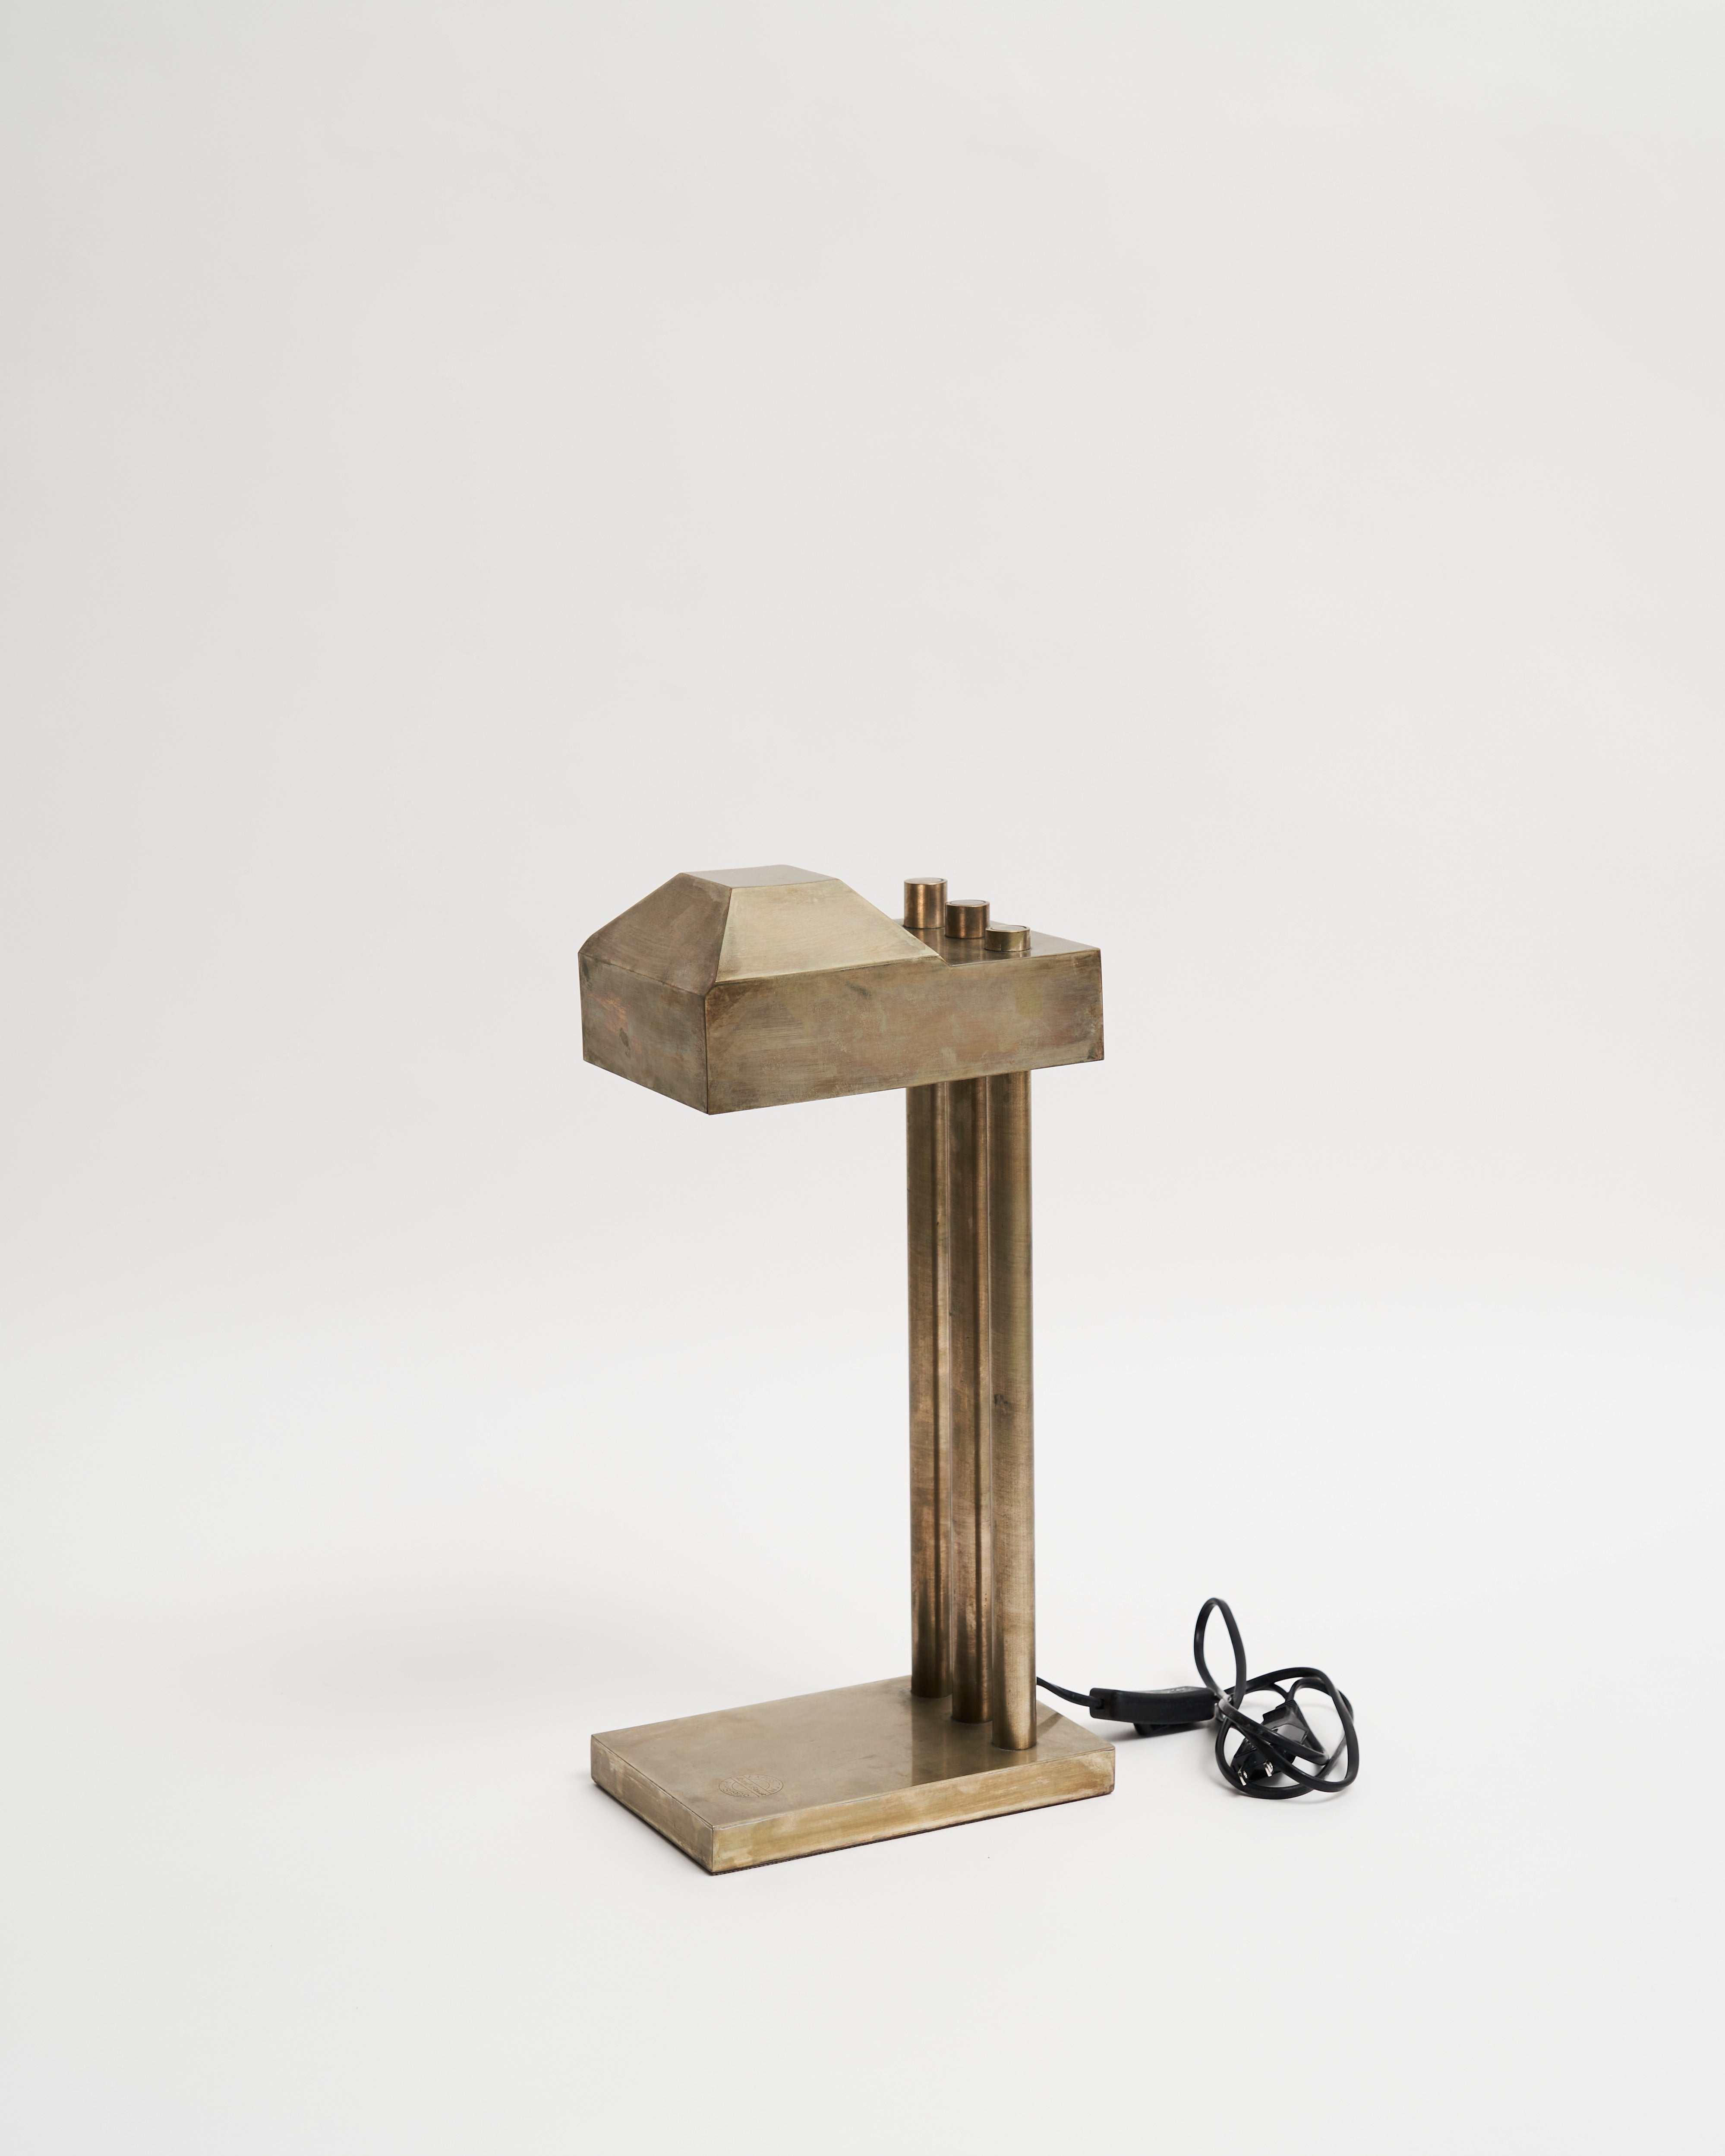 Desk lamp designed by Marcel Breuer – Graphpaper